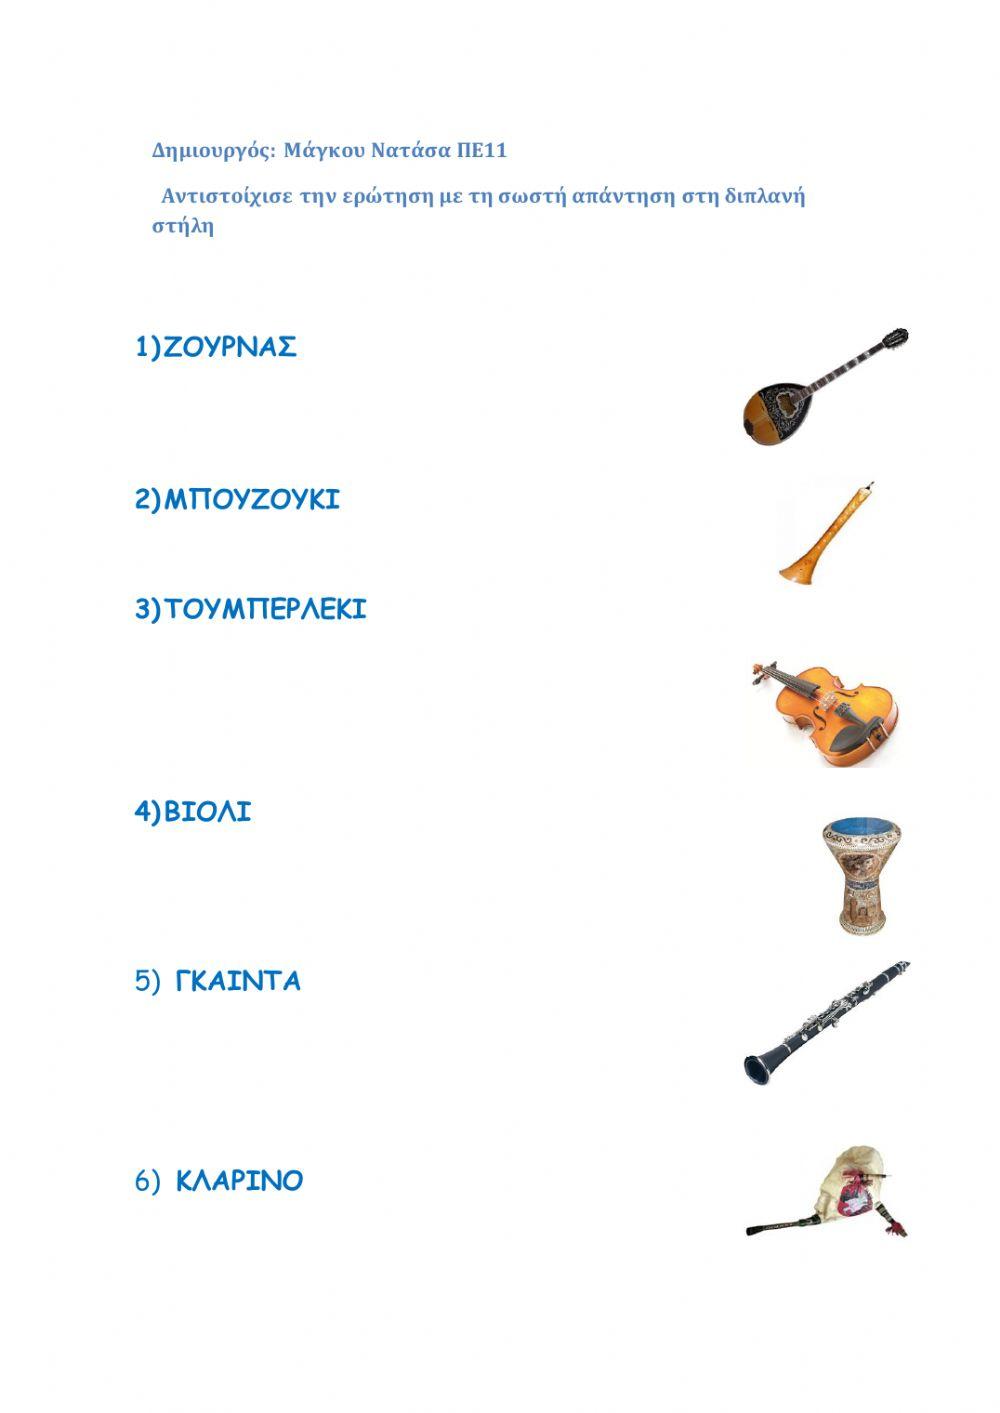 Παραδοσιακά μουσικά όργανα 1ο μέρος